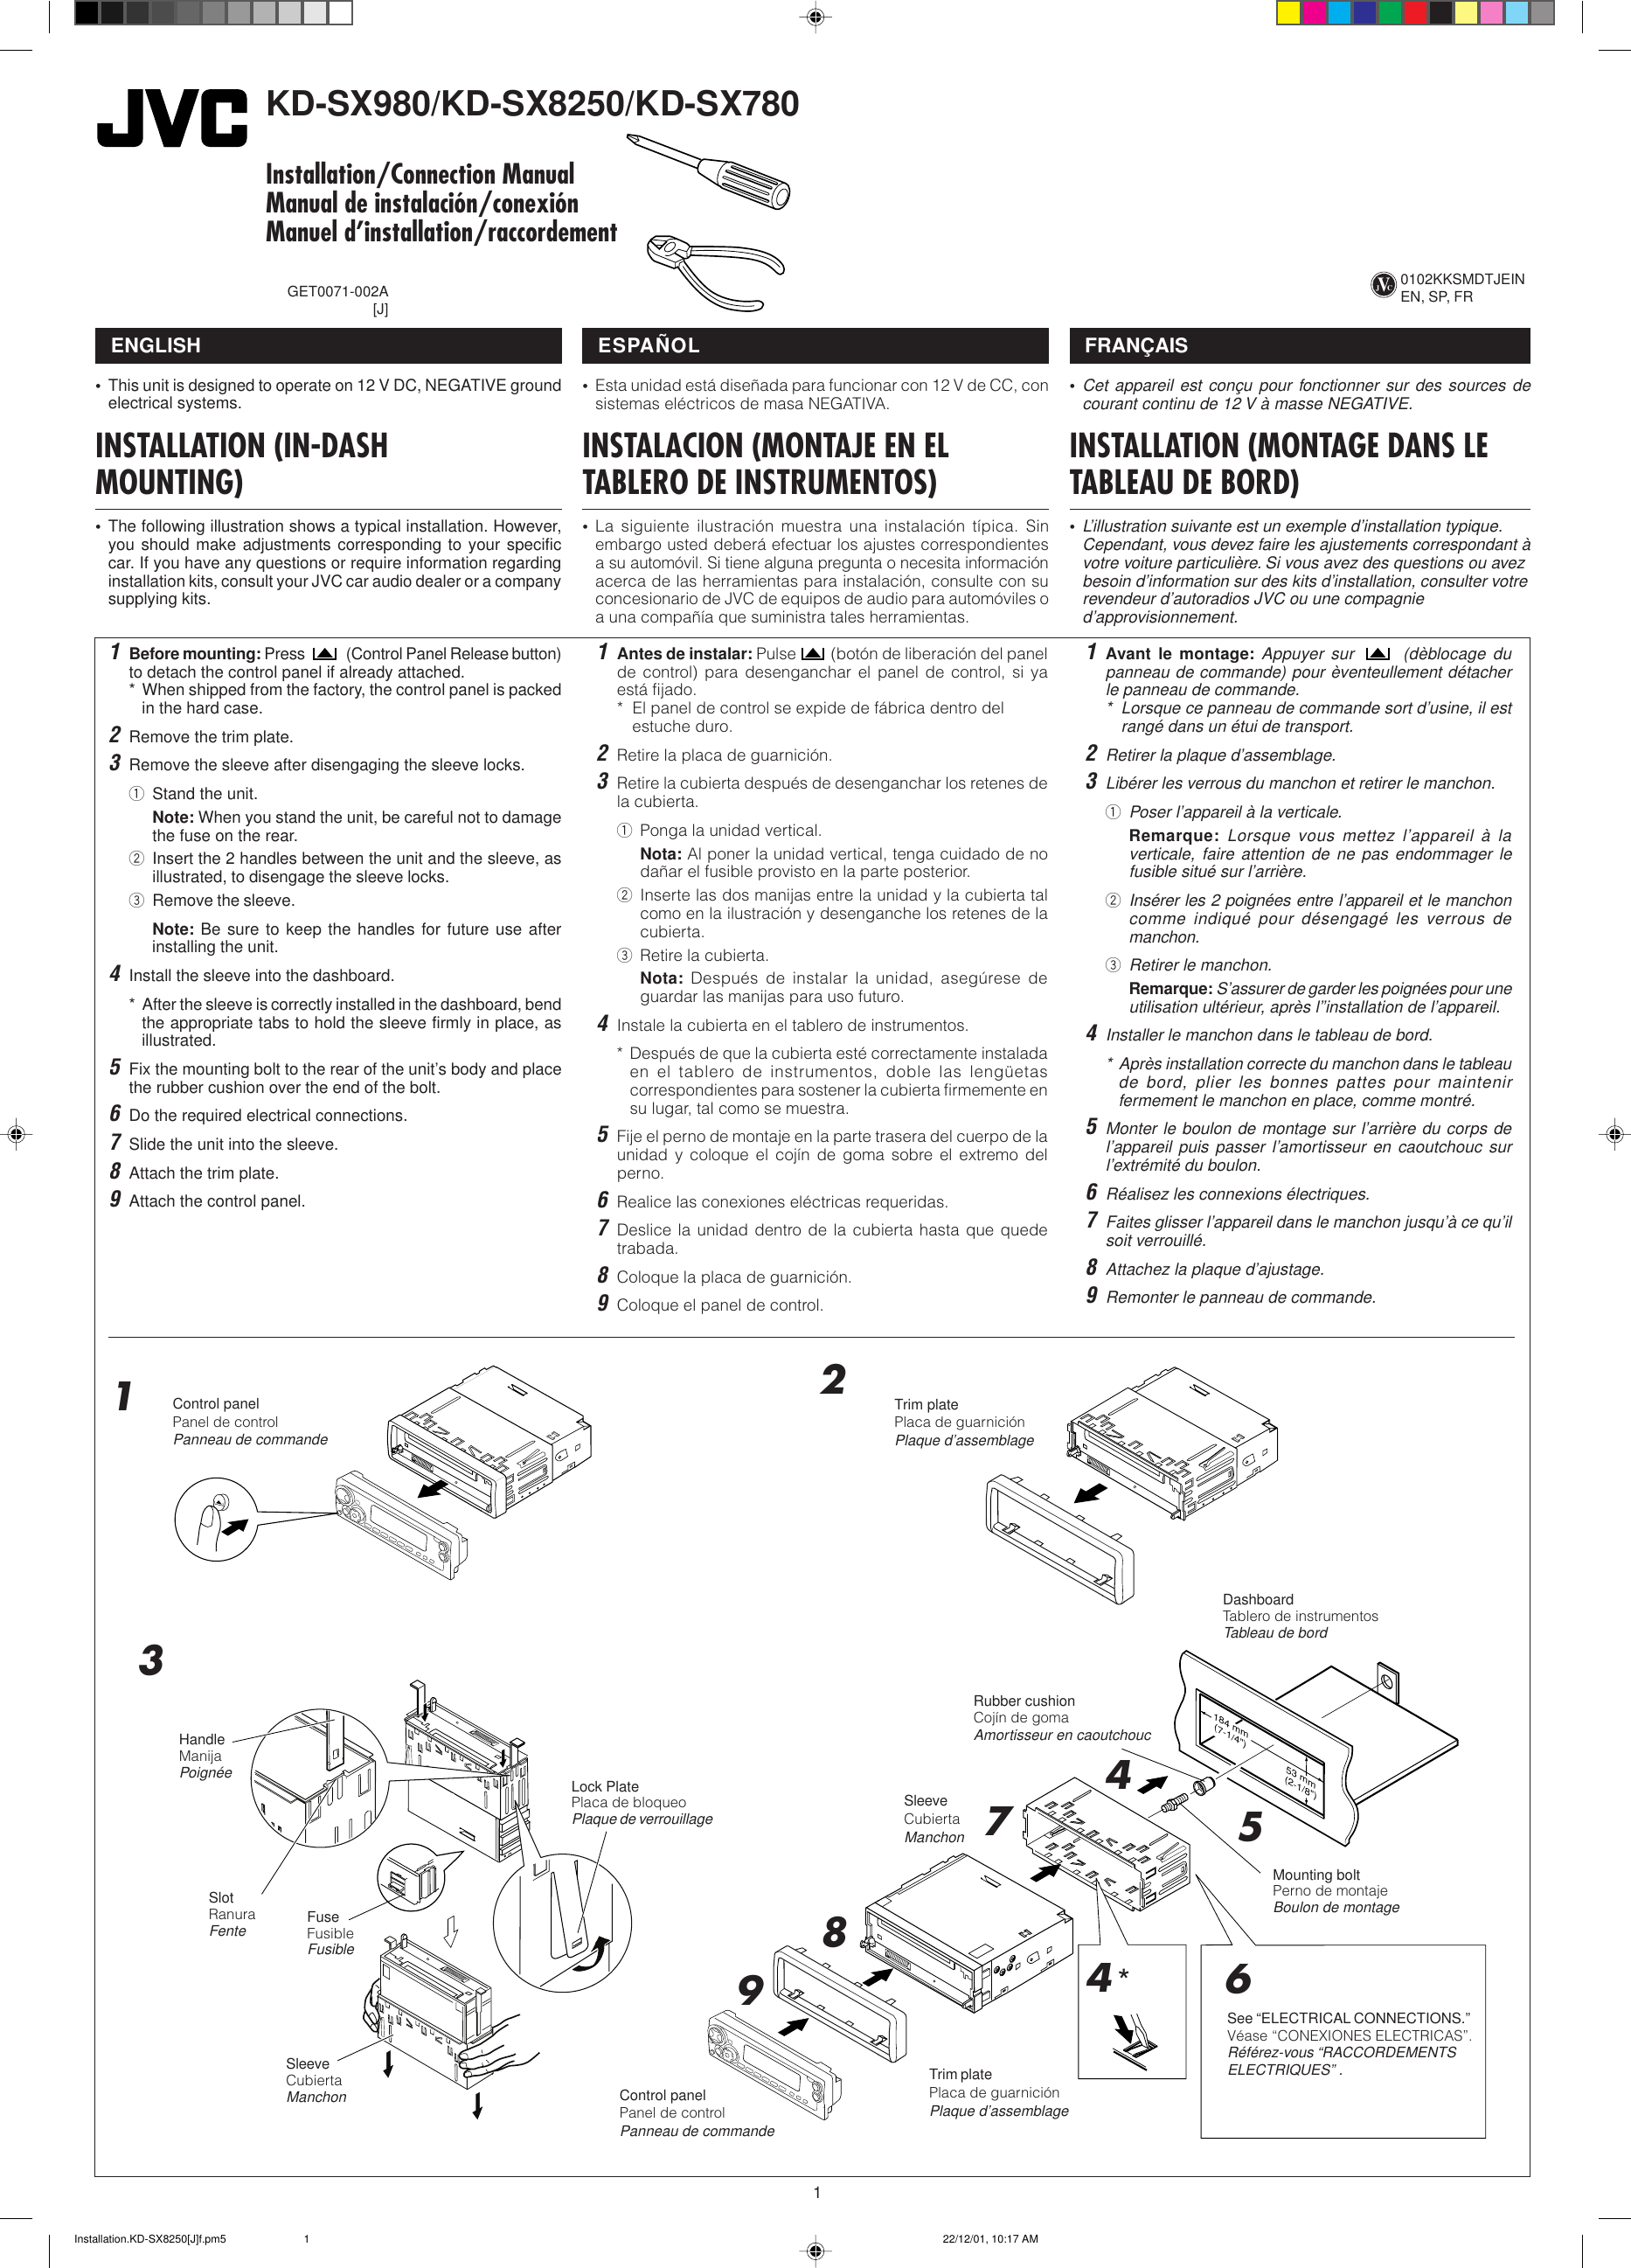 Page 1 of 4 - JVC KD-SX980 KD-SX980/KD-SX8250/KD-SX780 User Manual GET0071-002A